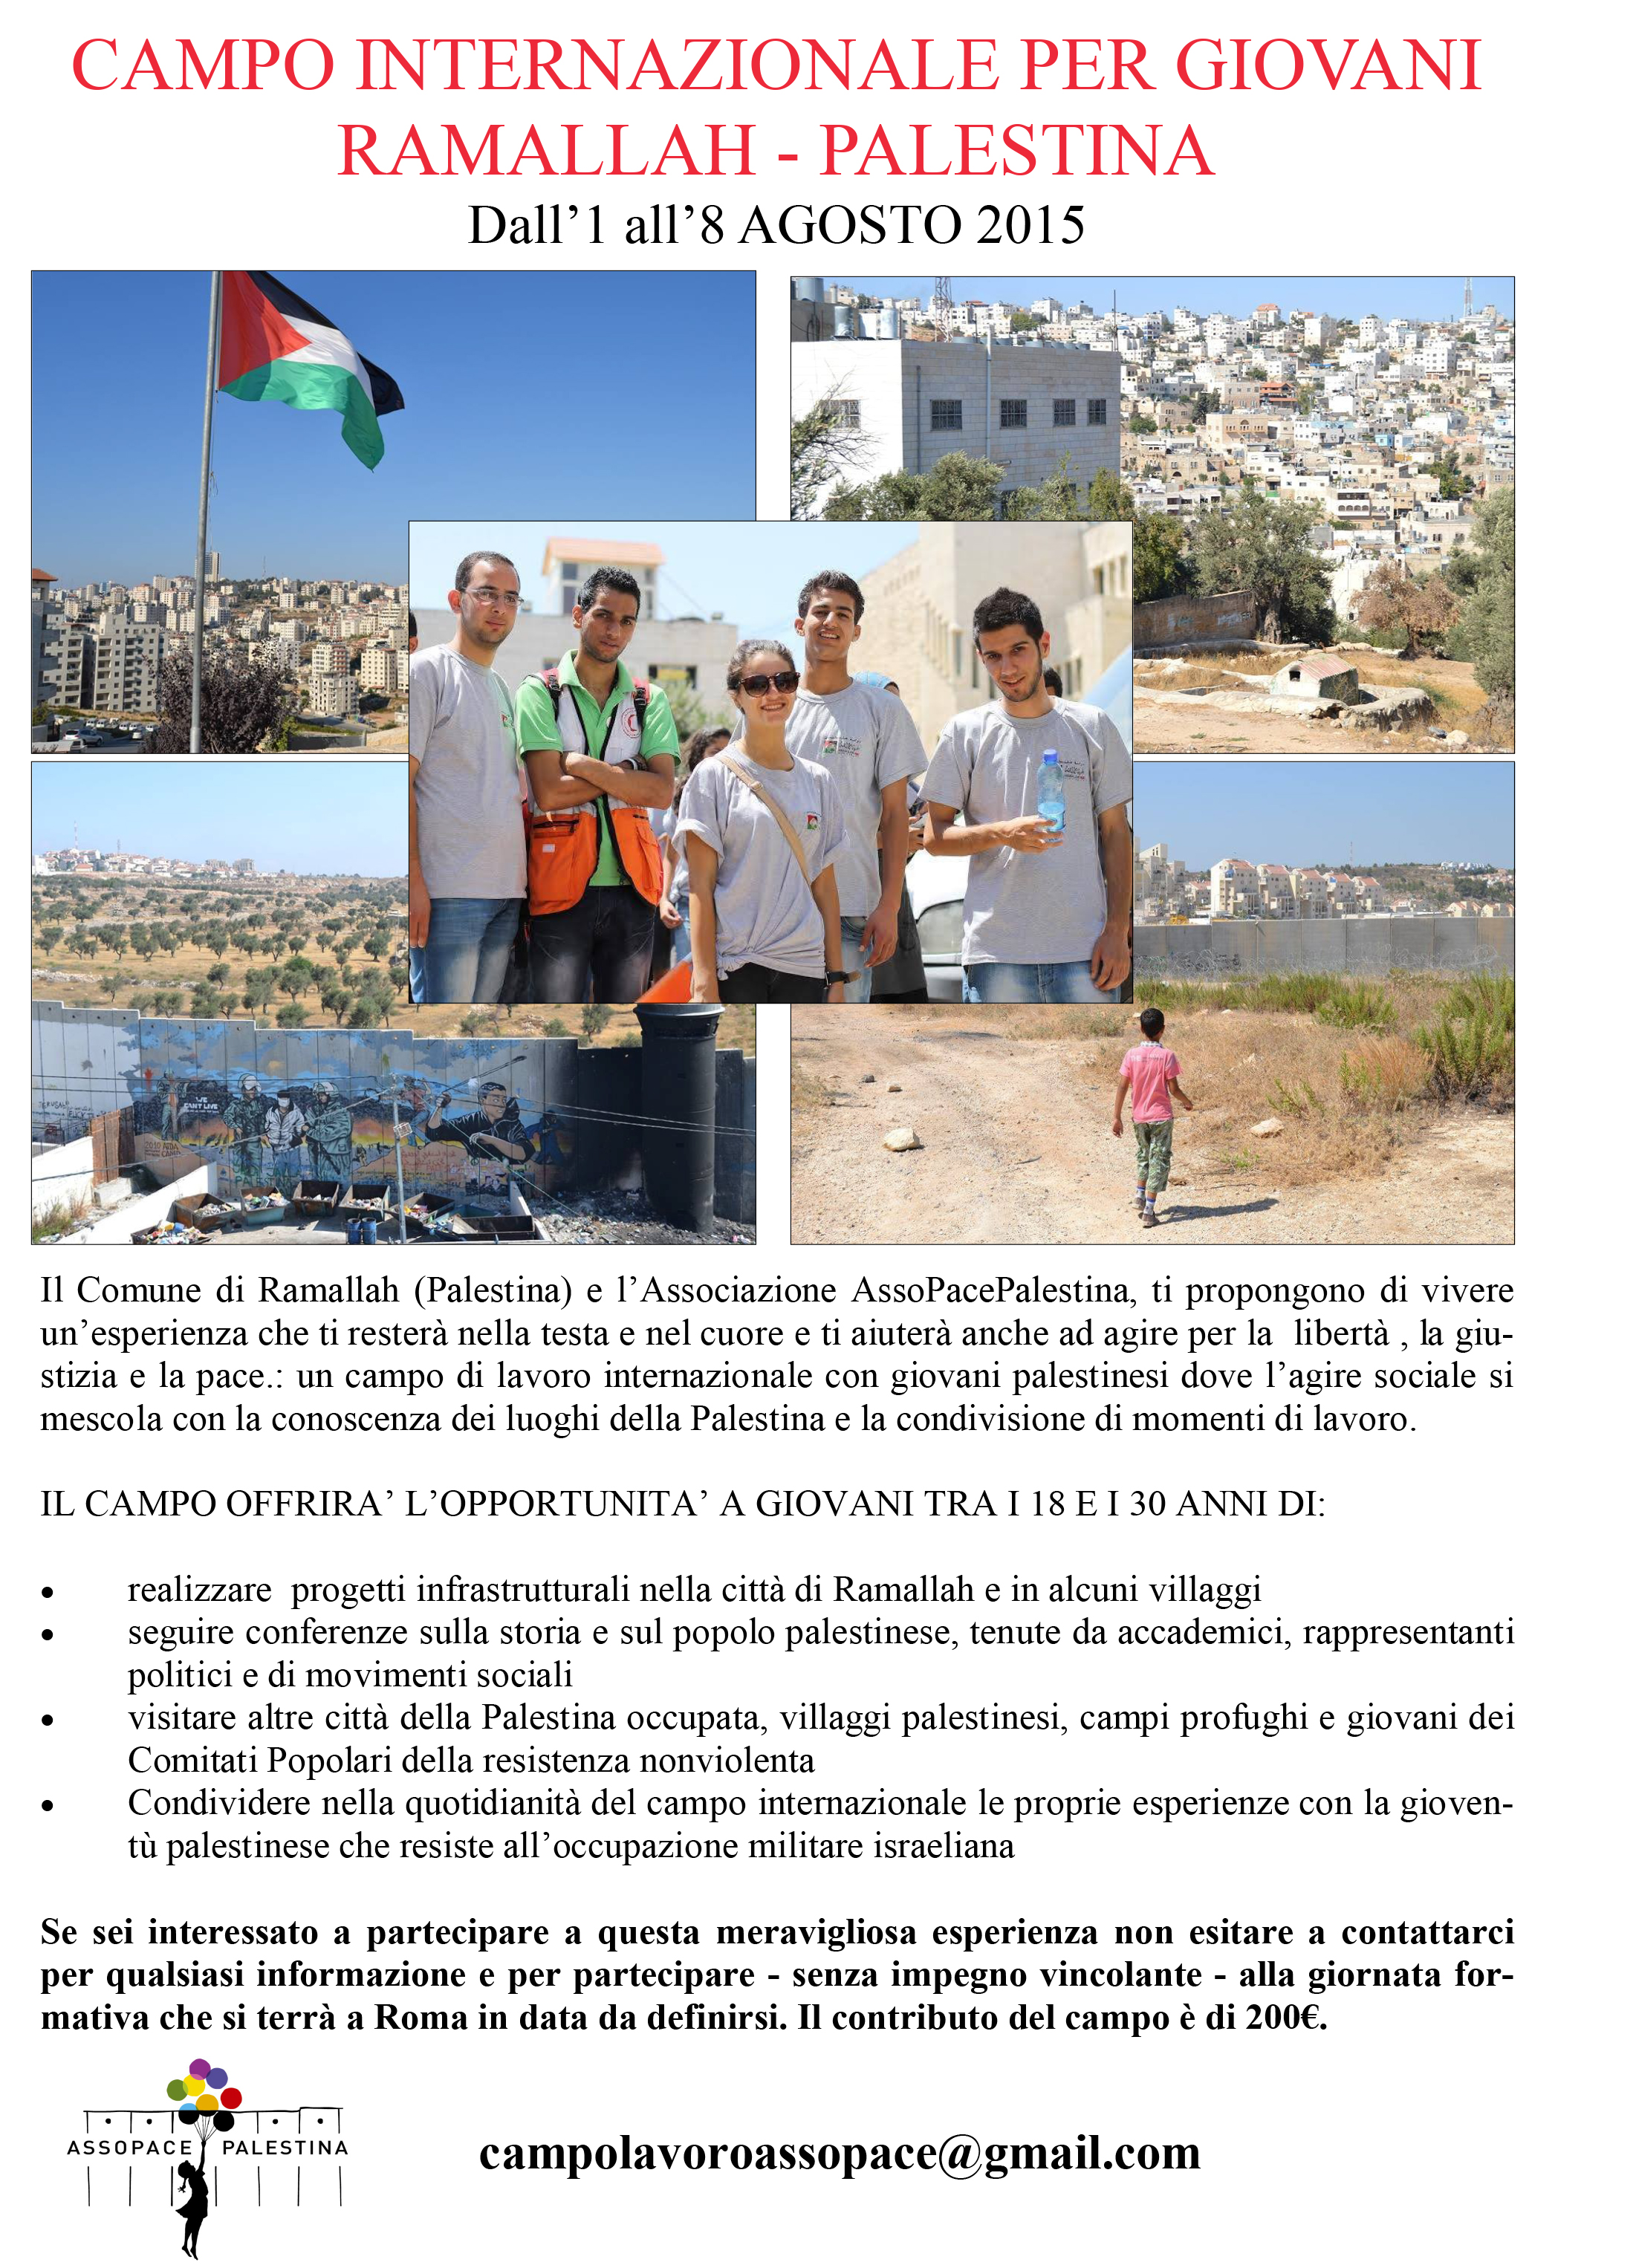 Campo internazionale per giovani a Ramallah 1-8 agosto 2015